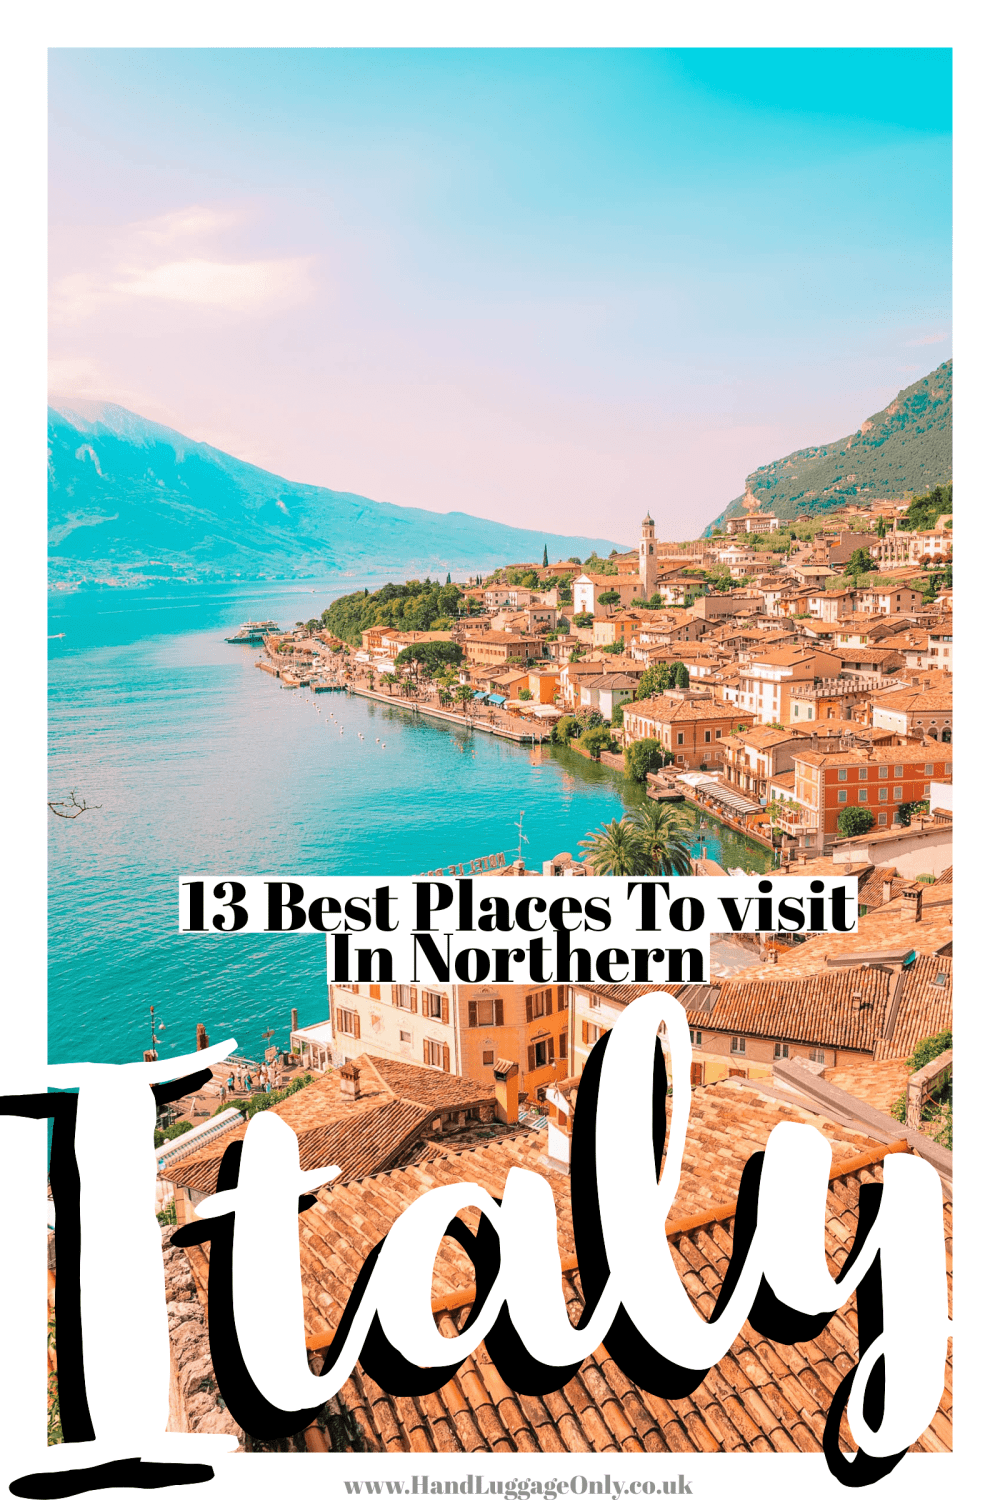  Лучшие места в Северной Италии для посещения (1) 